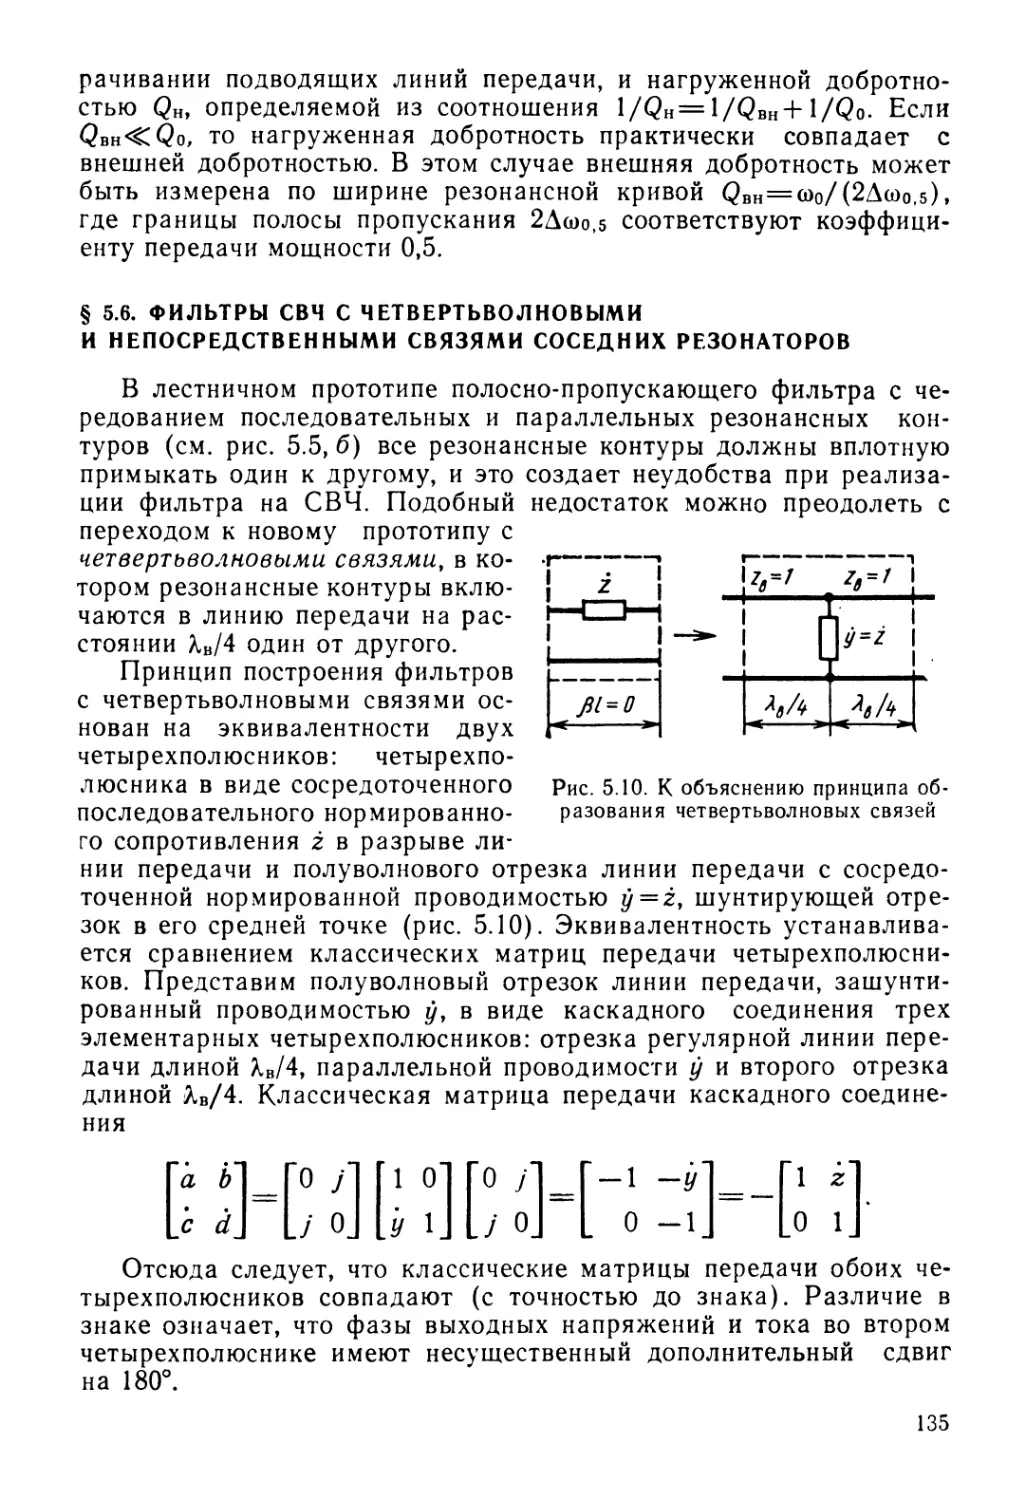 § 5.6. Фильтры СВЧ с четвертьволновыми и непосредственными связями соседних резонаторов